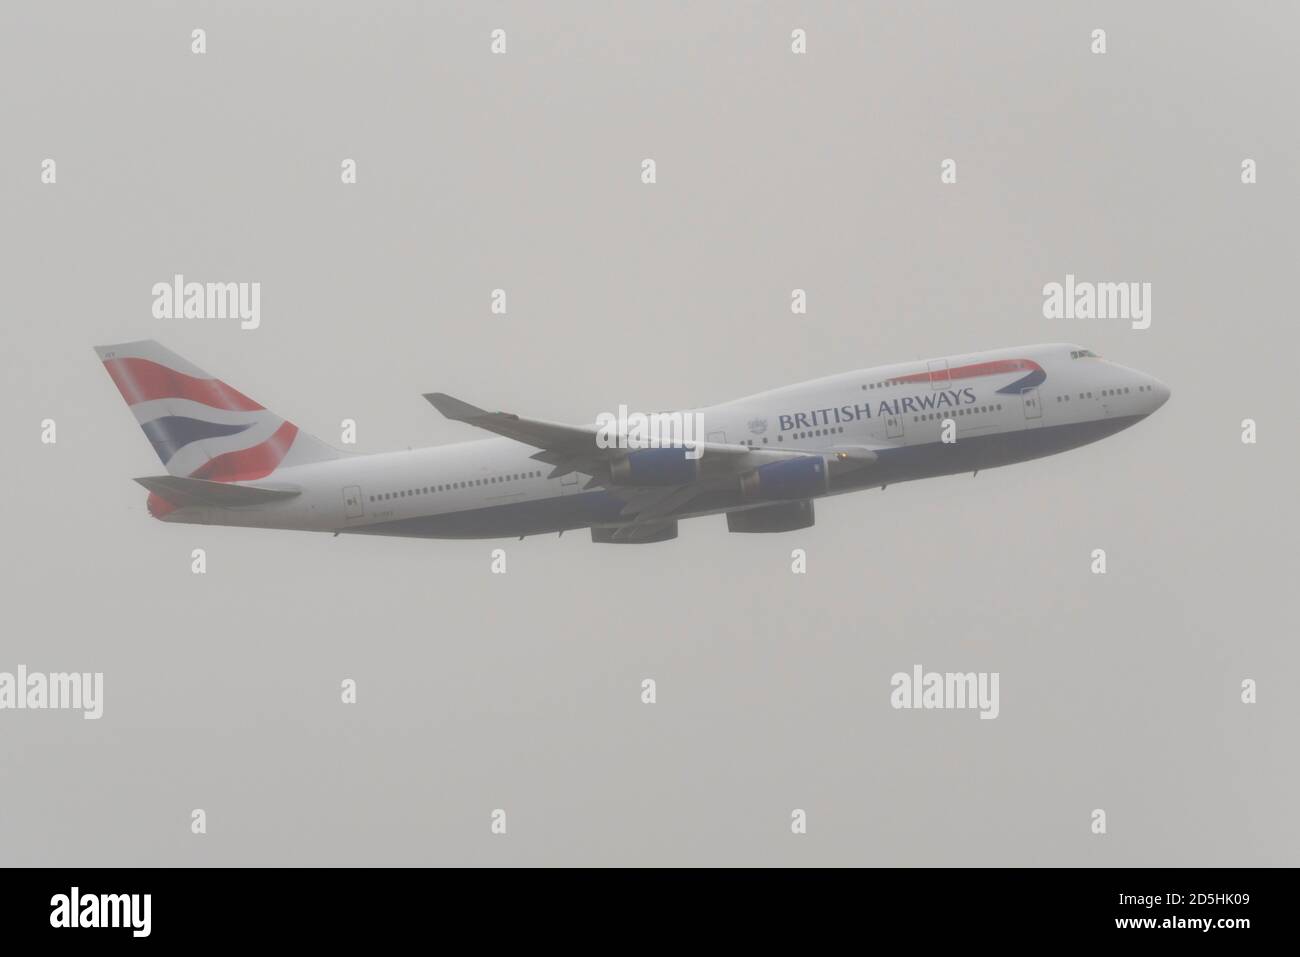 Addio per British Airways Boeing 747 Jumbo Jet Airliner aereo G-CIVY dopo la crisi COVID-19. Ultima a lasciare Heathrow dirigendosi verso la nuvola per rottamare Foto Stock